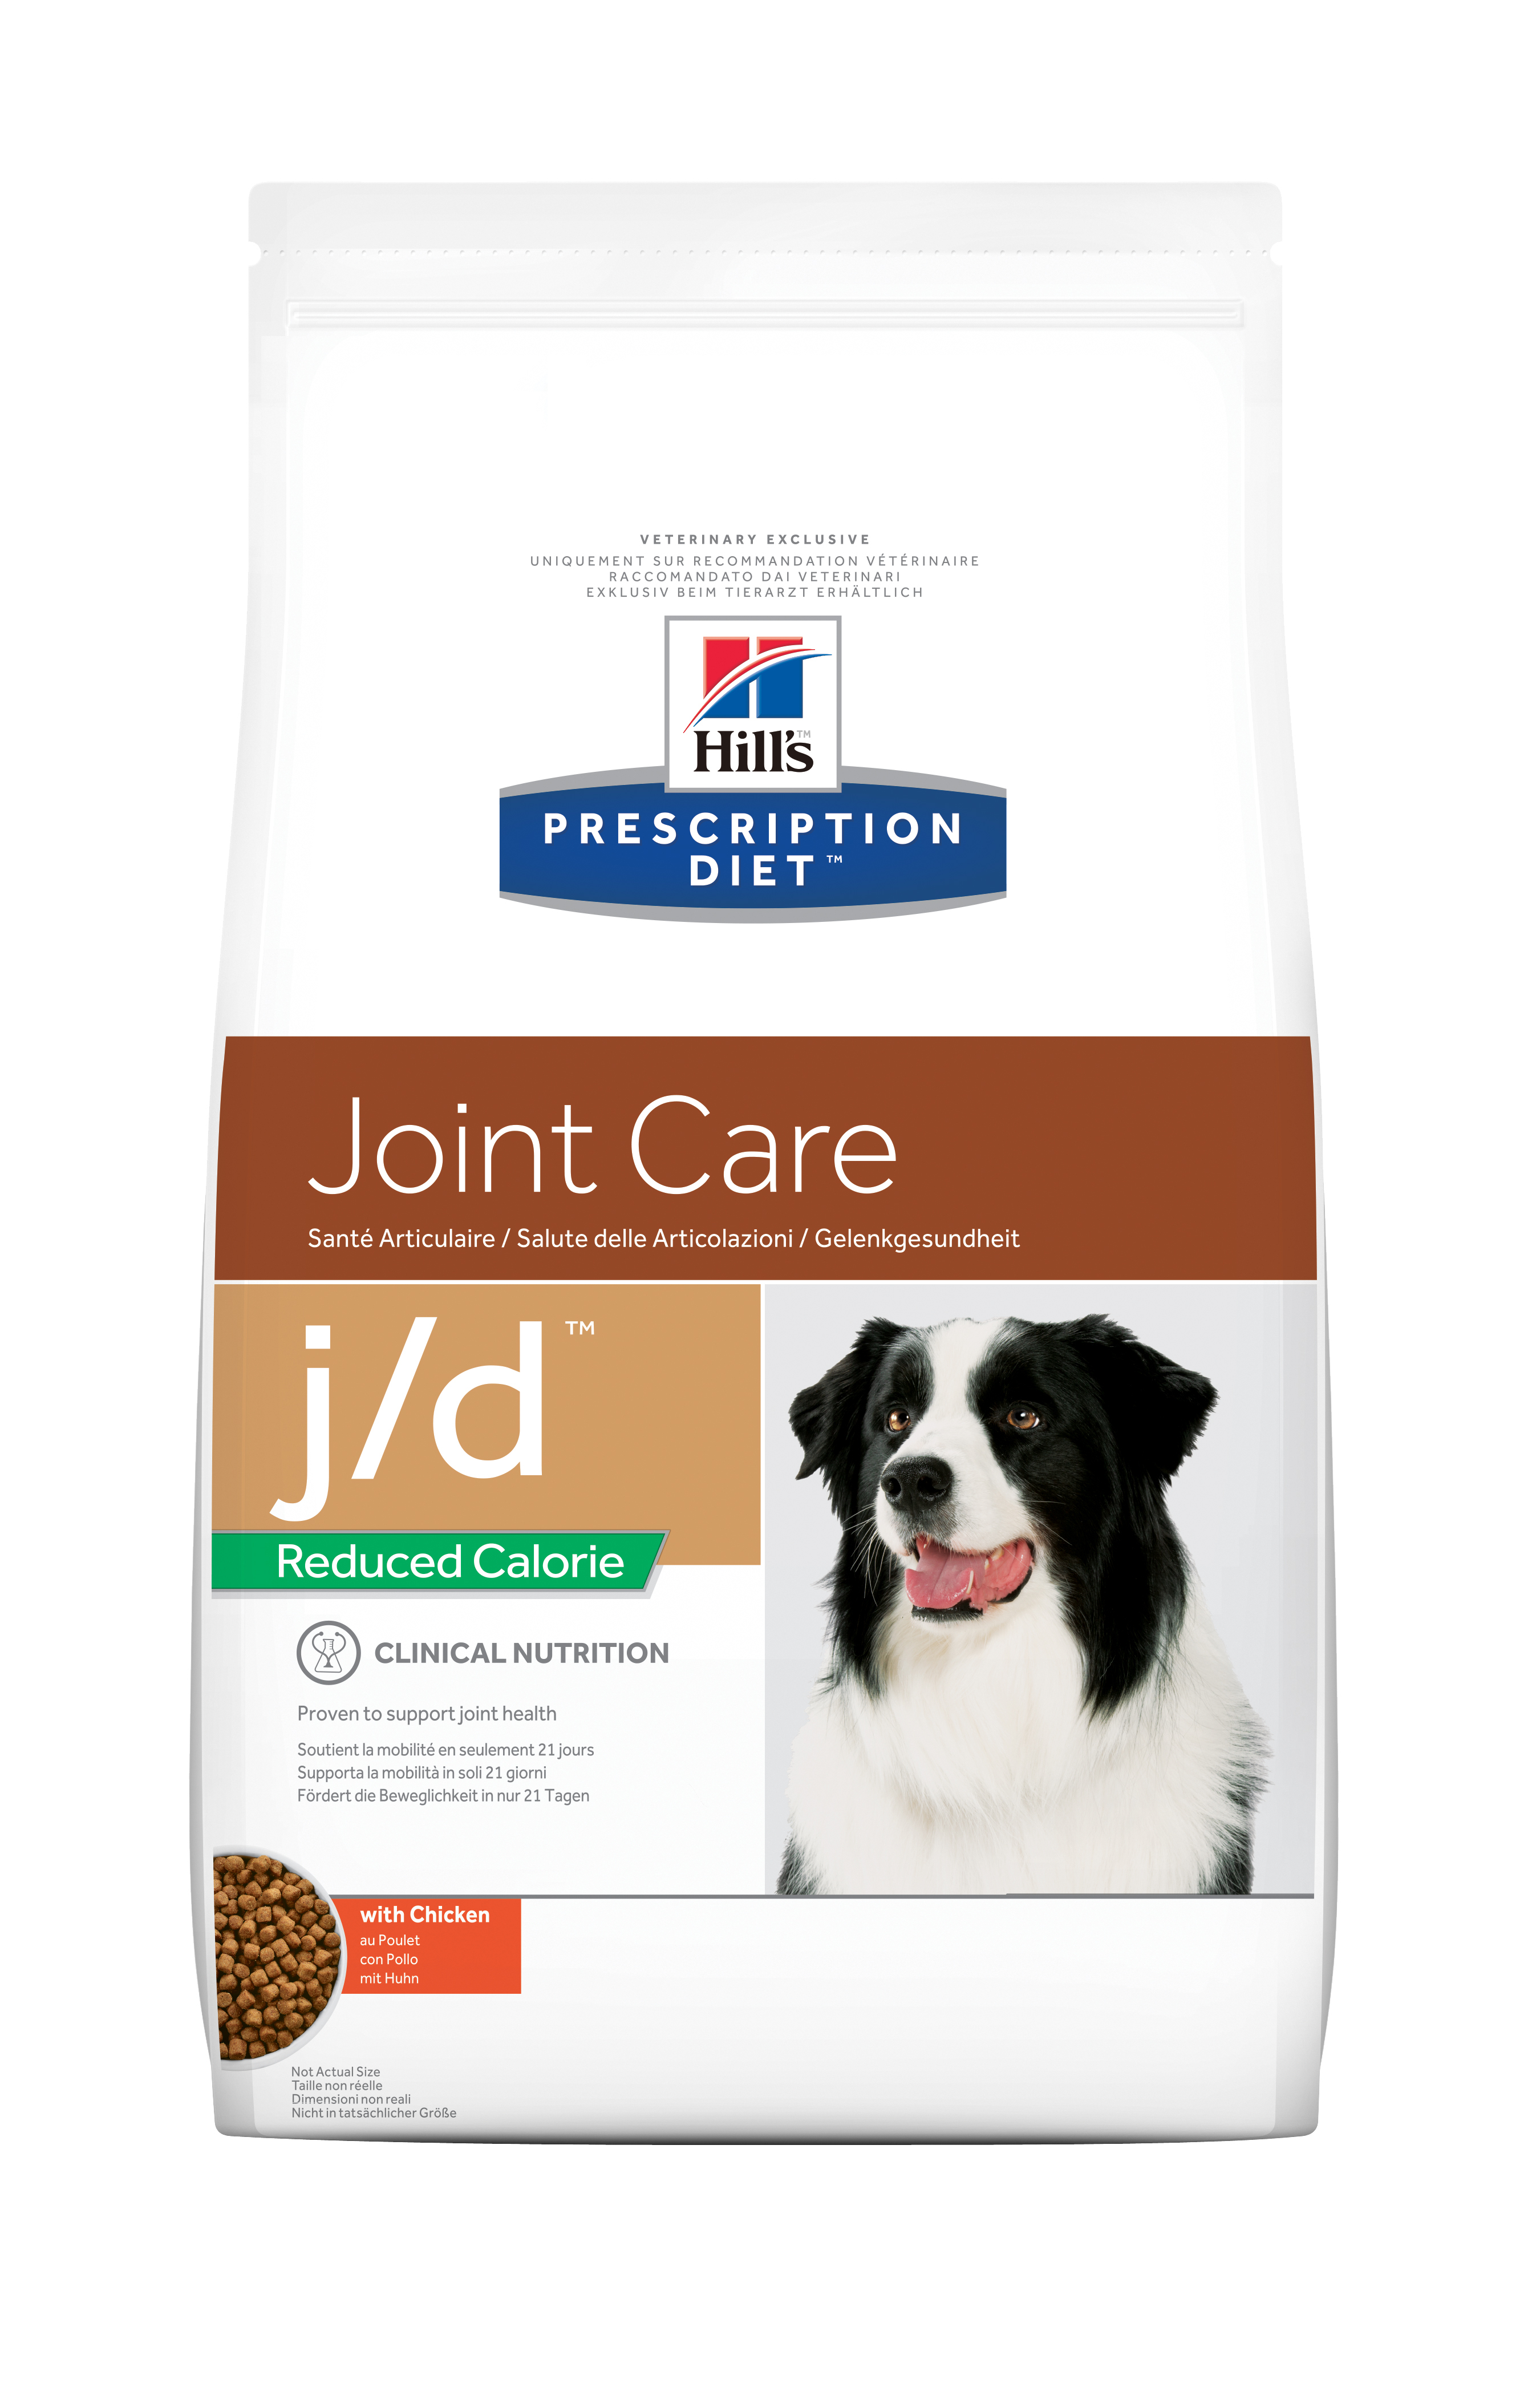 Hill's Prescription Diet Joint Care j/d Reduced Calorie 12kg